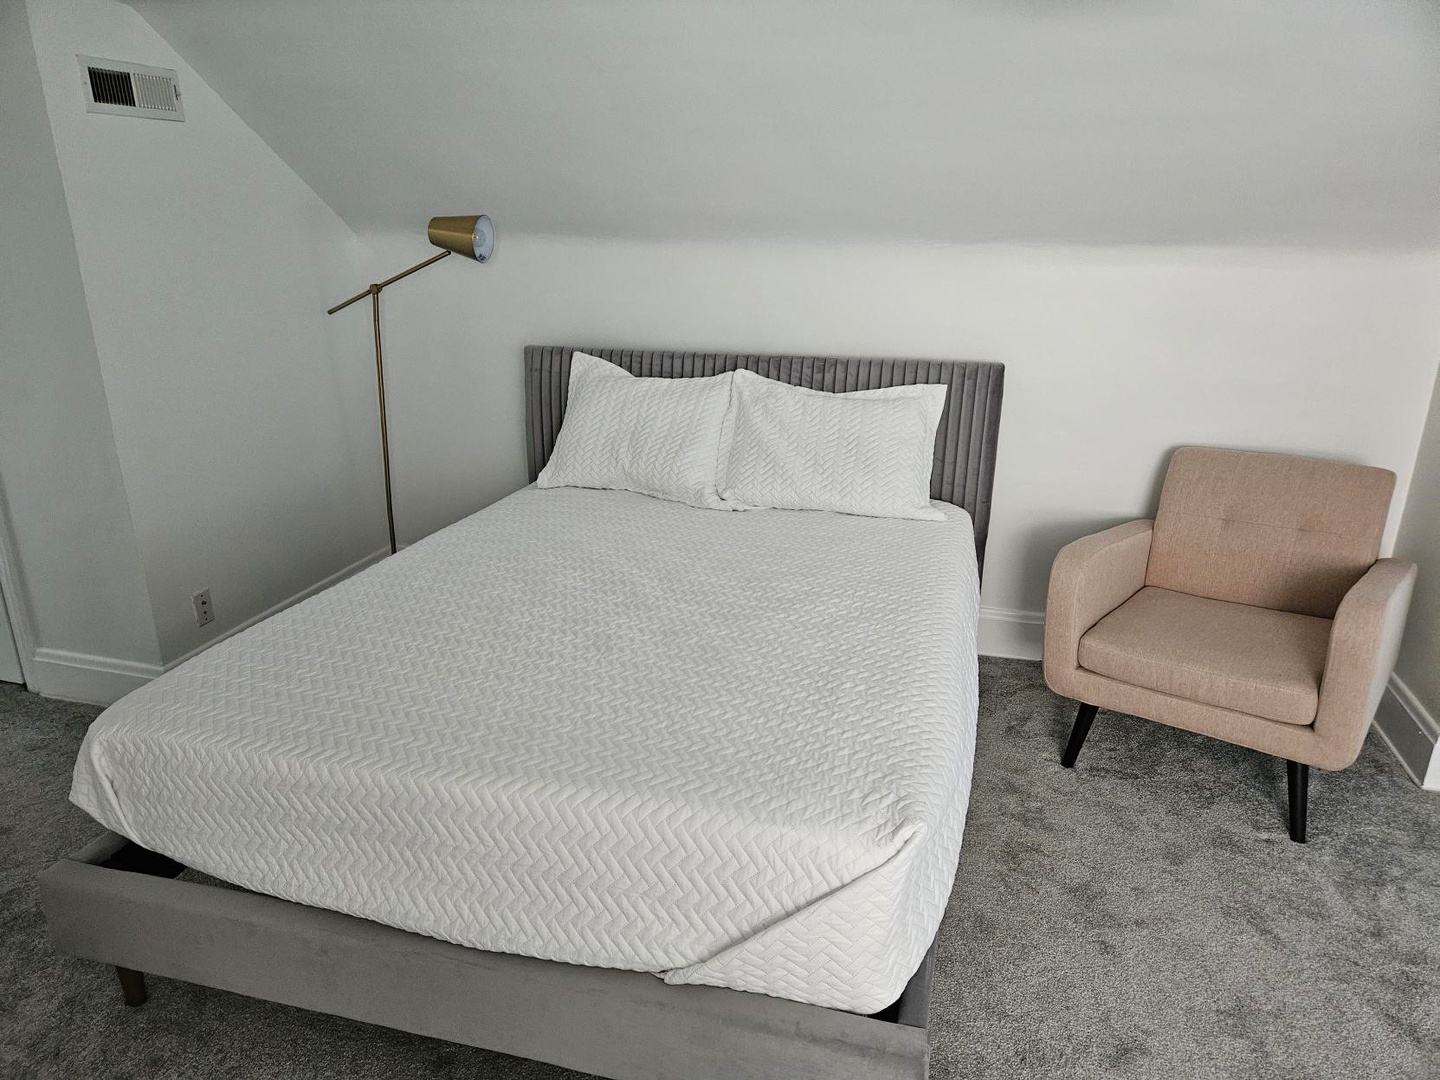 The 3rd floor attic bedroom area includes a cozy queen bed & armchair